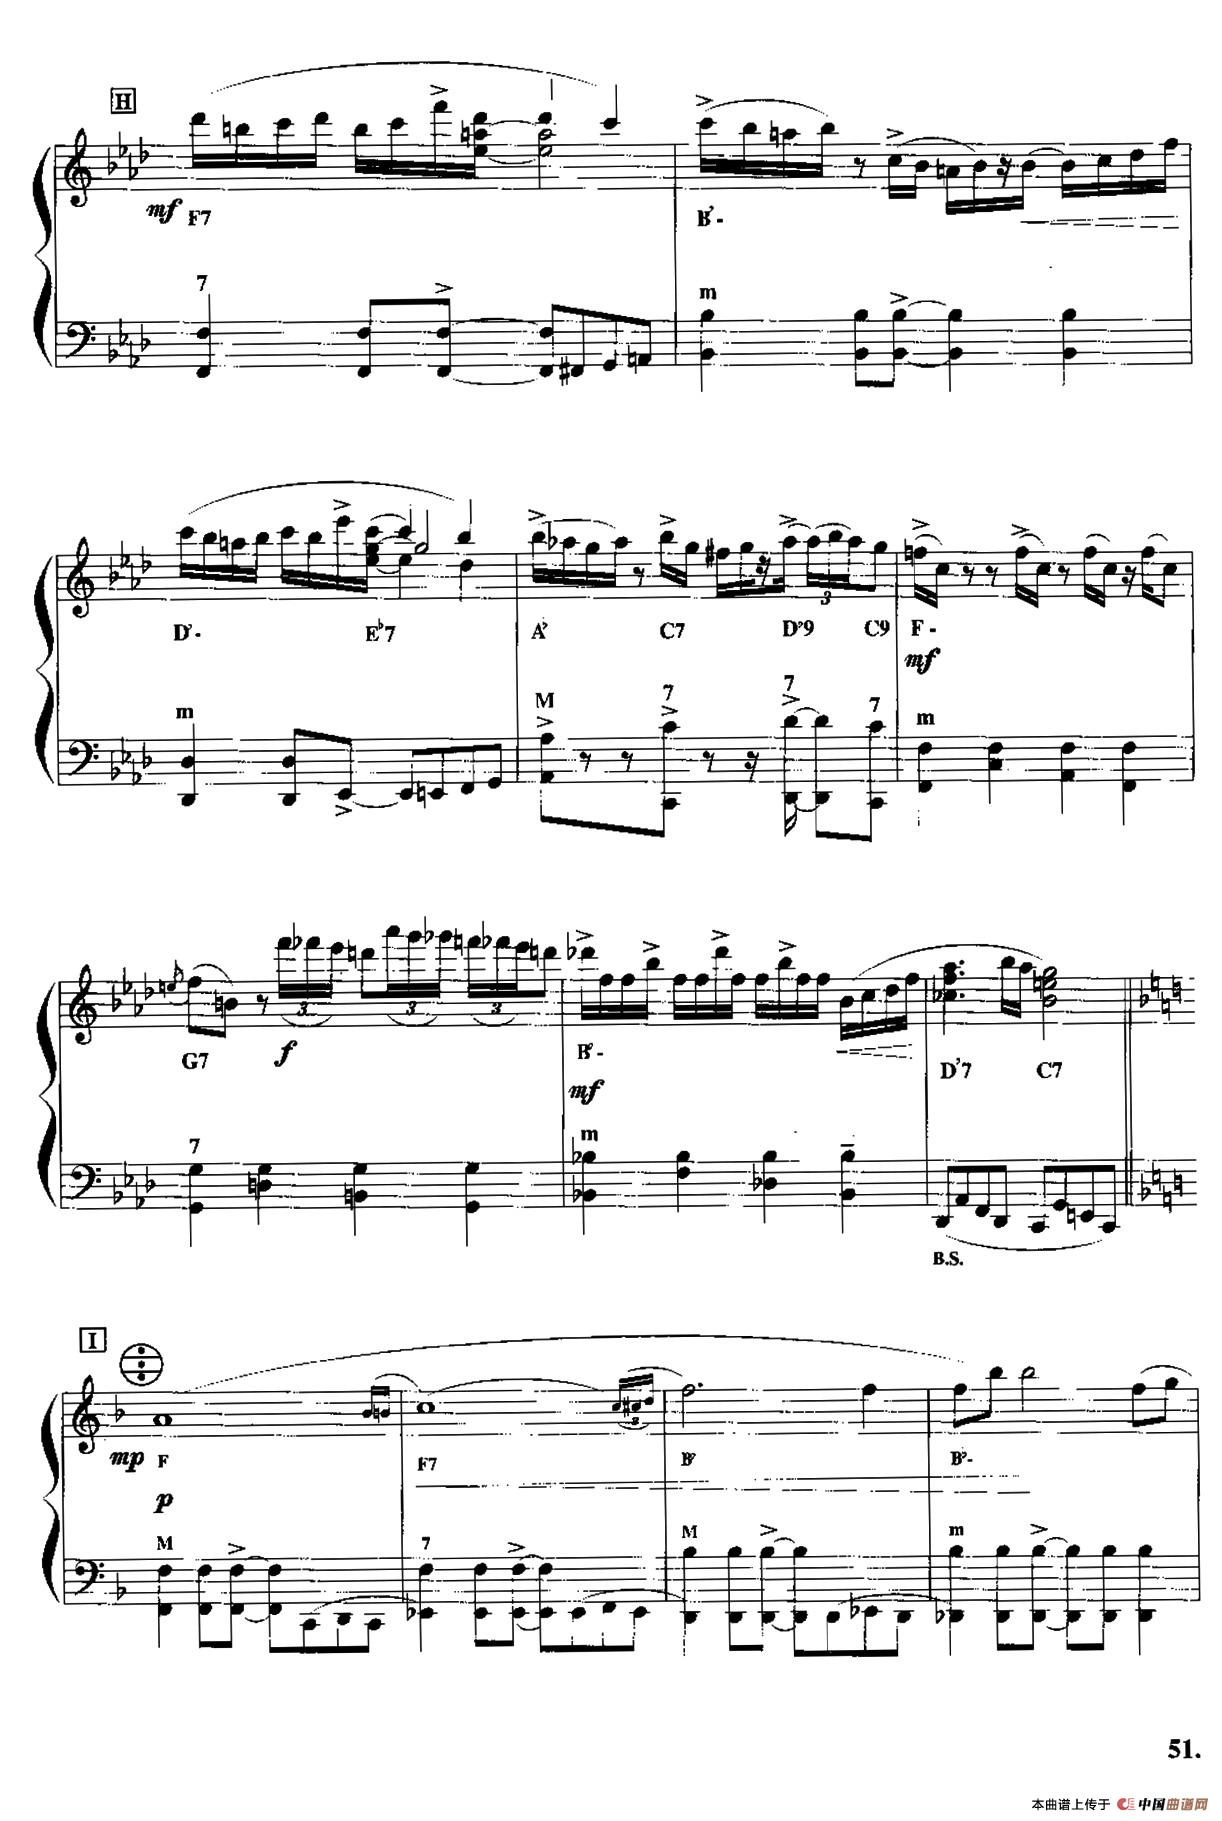 米朗·帕拉斯—探戈手风琴谱（线简谱对照、带指法版）